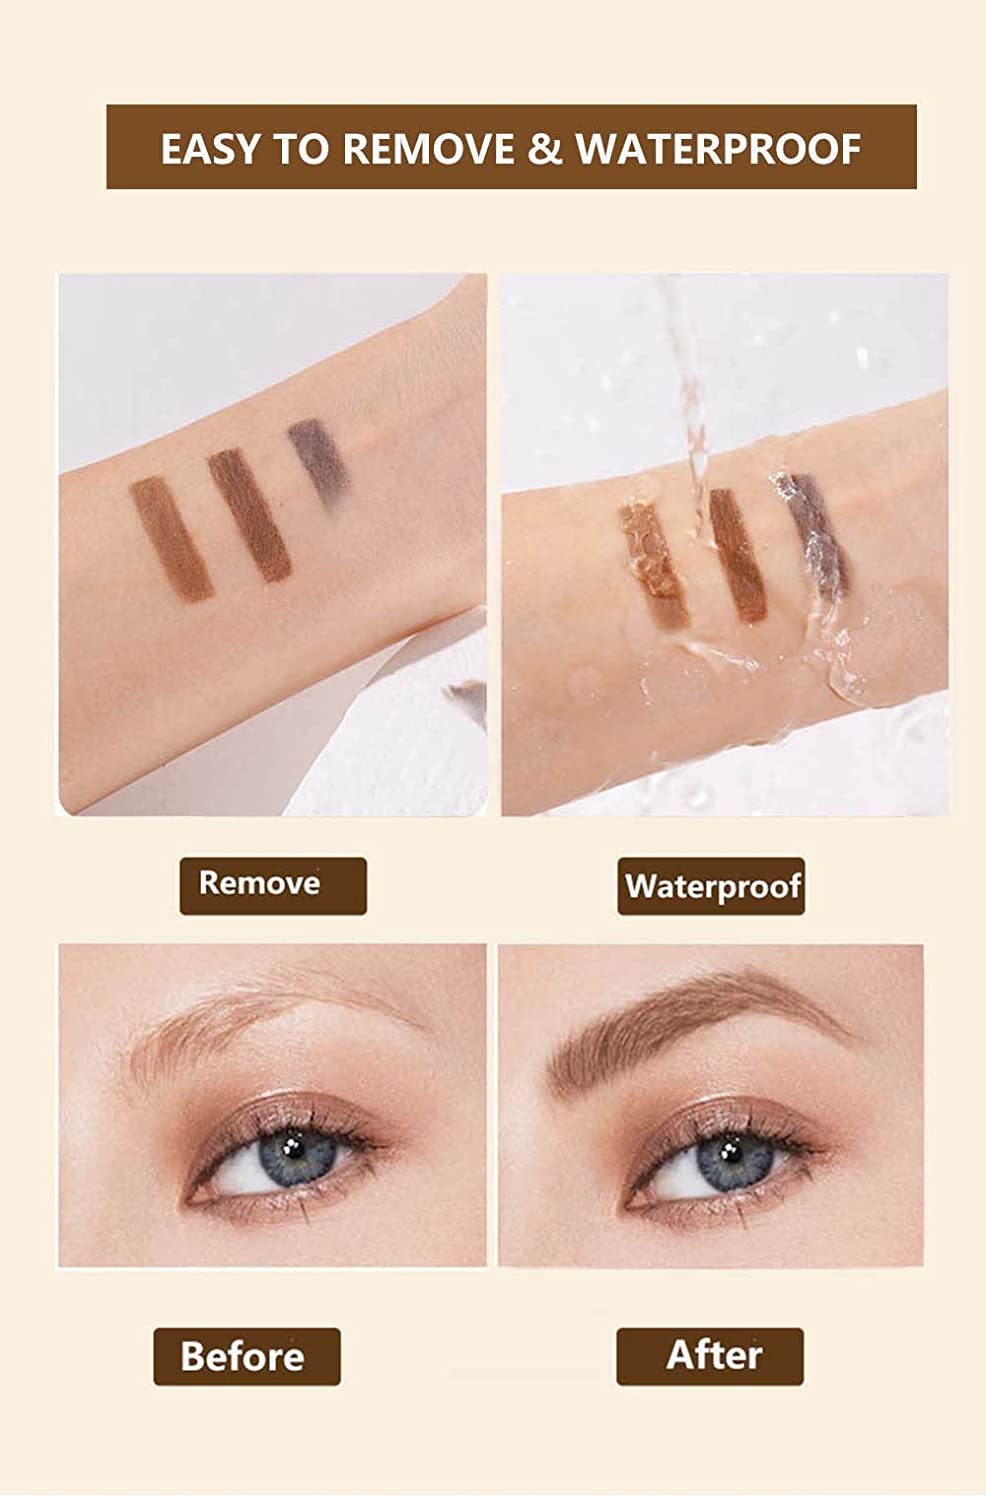 Ögonbrynspenna Vattenfast ögonbrynspenna Eyebrow pencil på kundens hud, direkt test av vatten stänkt på färg utan att förlora pigment